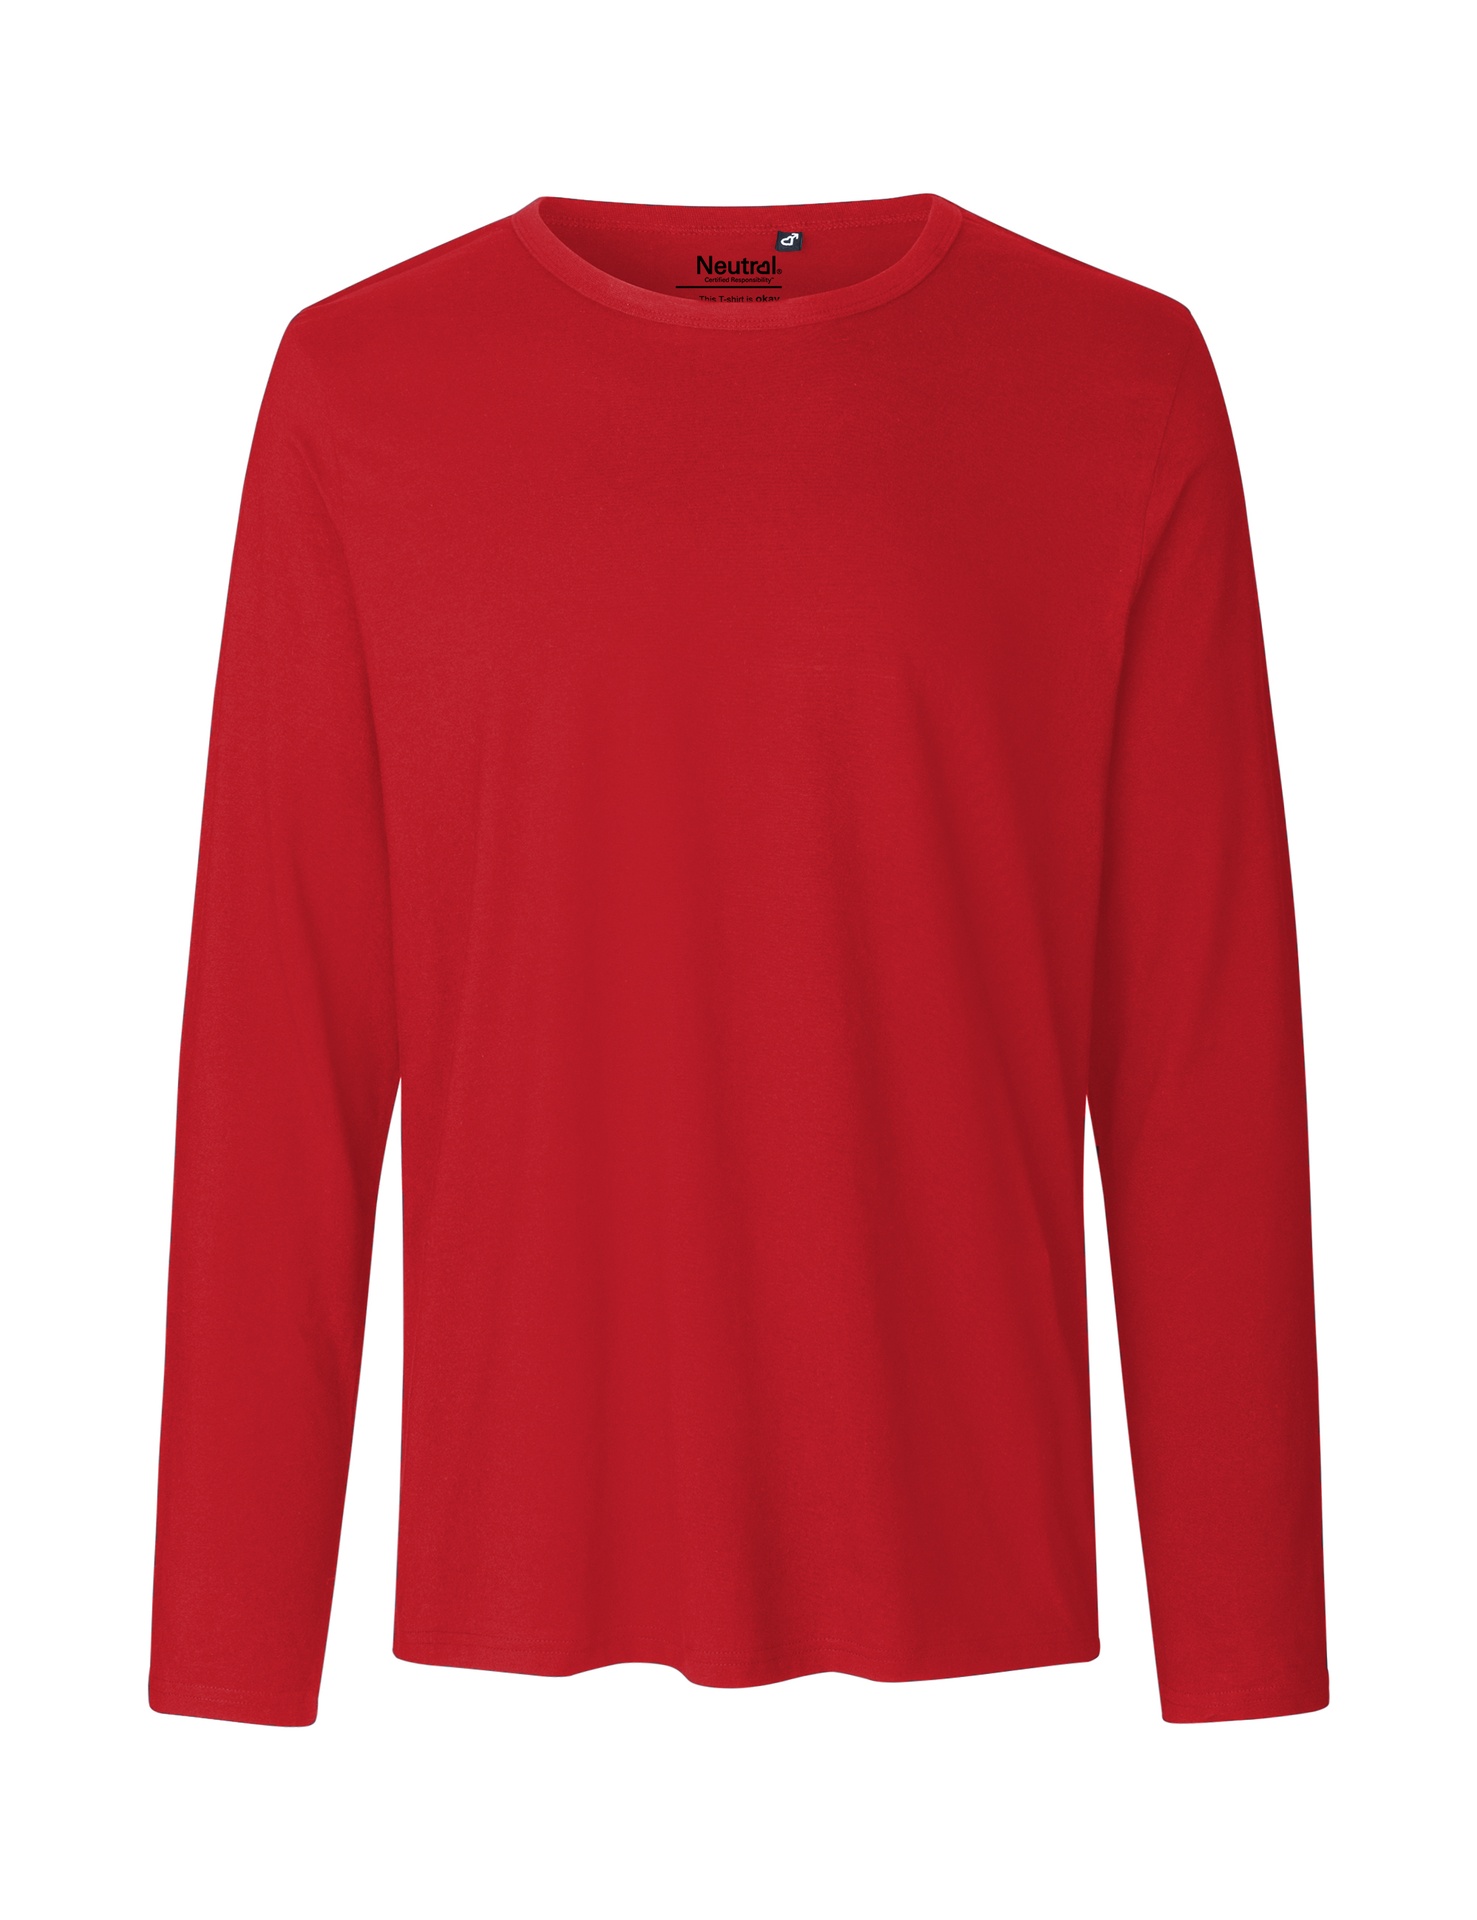 [PR/02358] Mens Long Sleeve T-Shirt (Red 05, L)